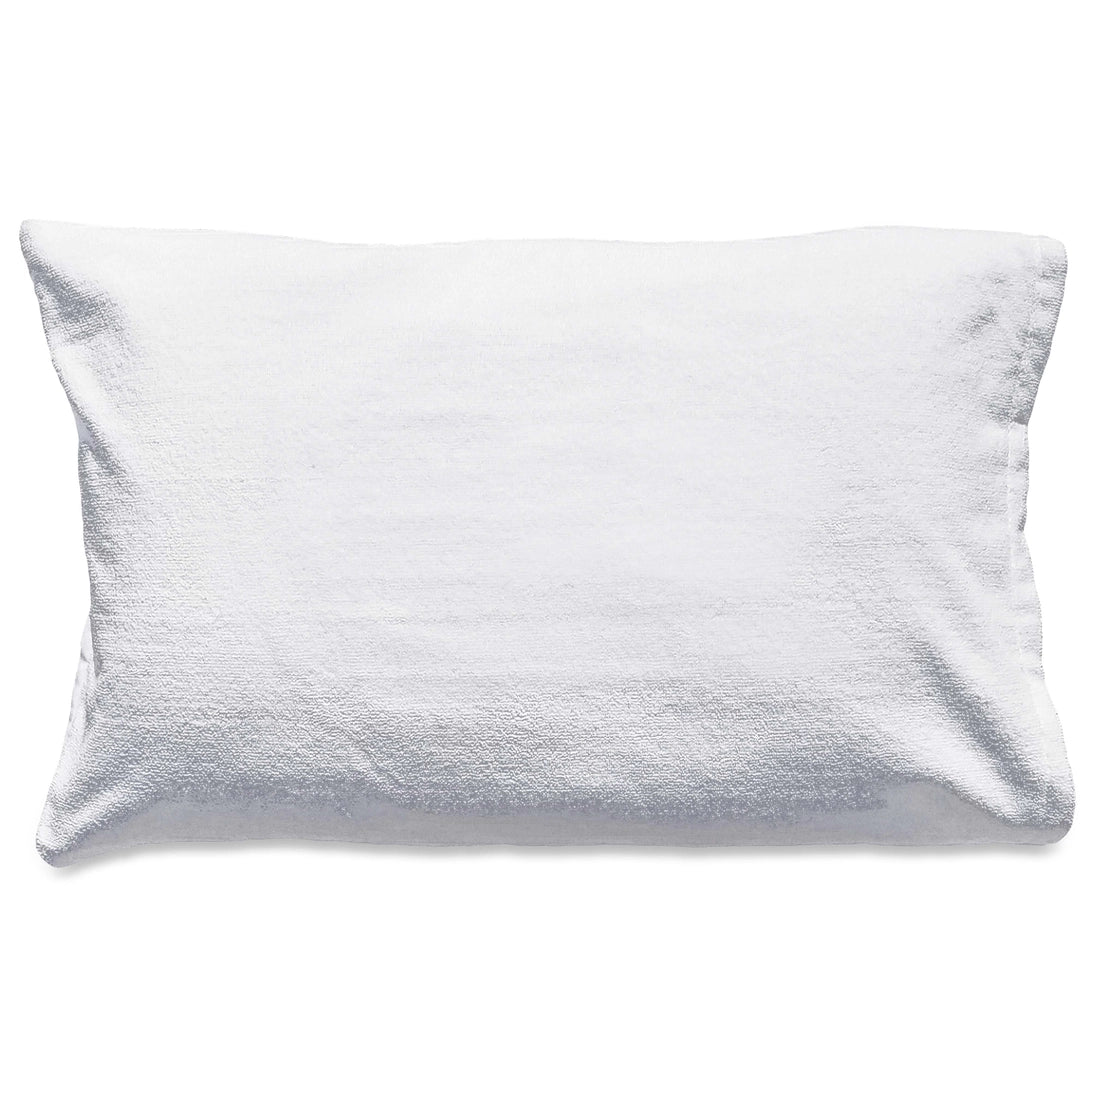 White Satin DryZzz - The Pillowcase for Wet-heads